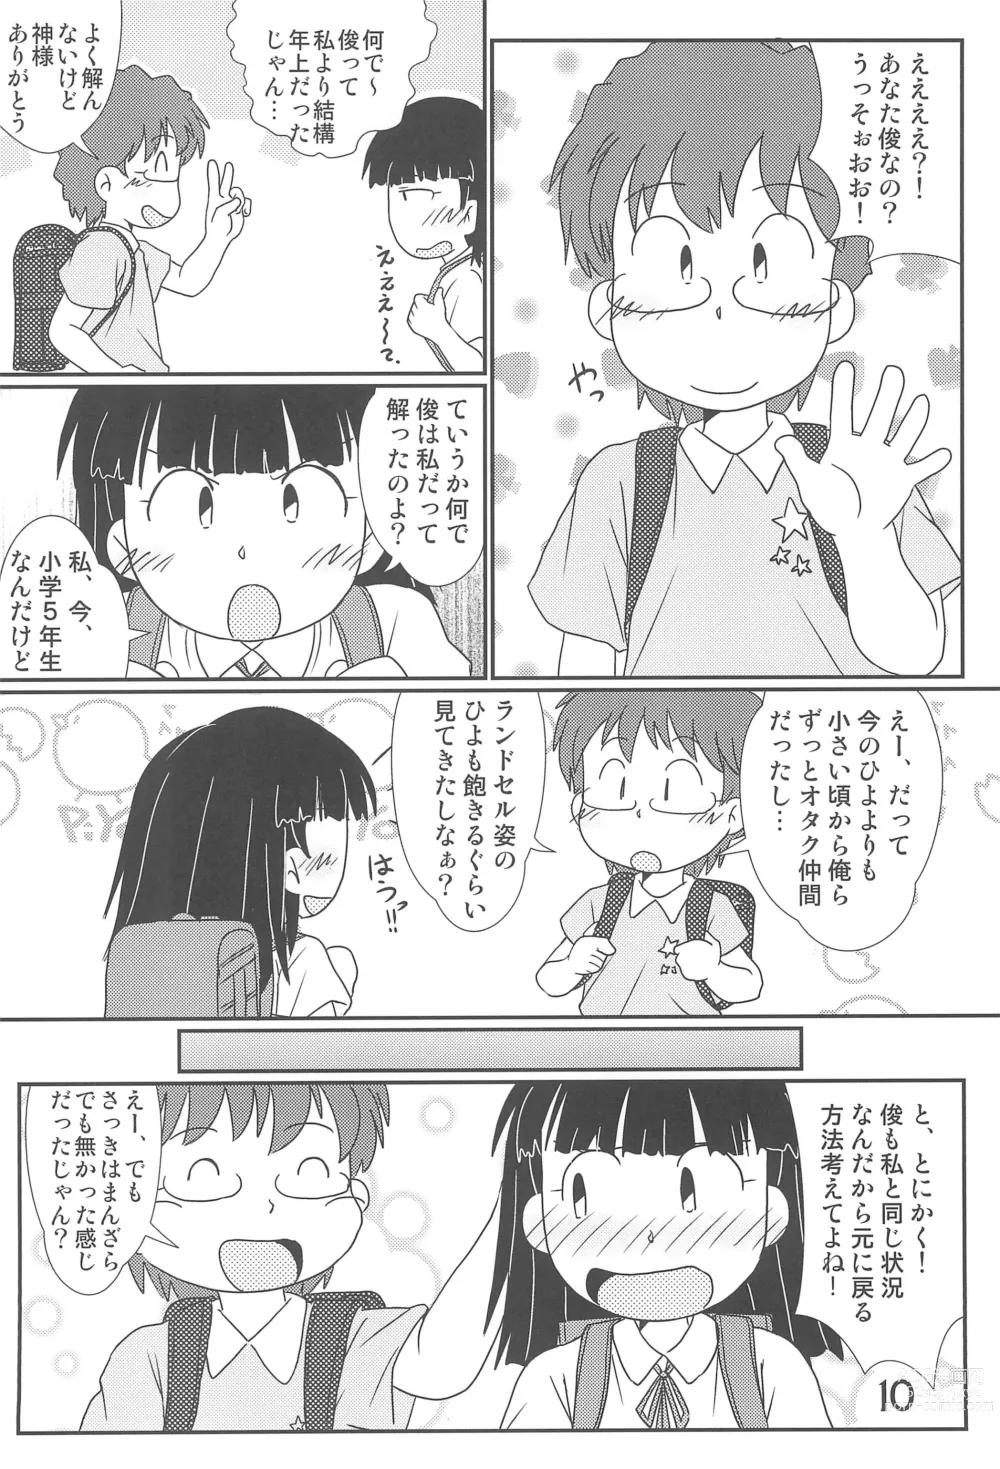 Page 10 of doujinshi Tama ni wa ii janai ka?